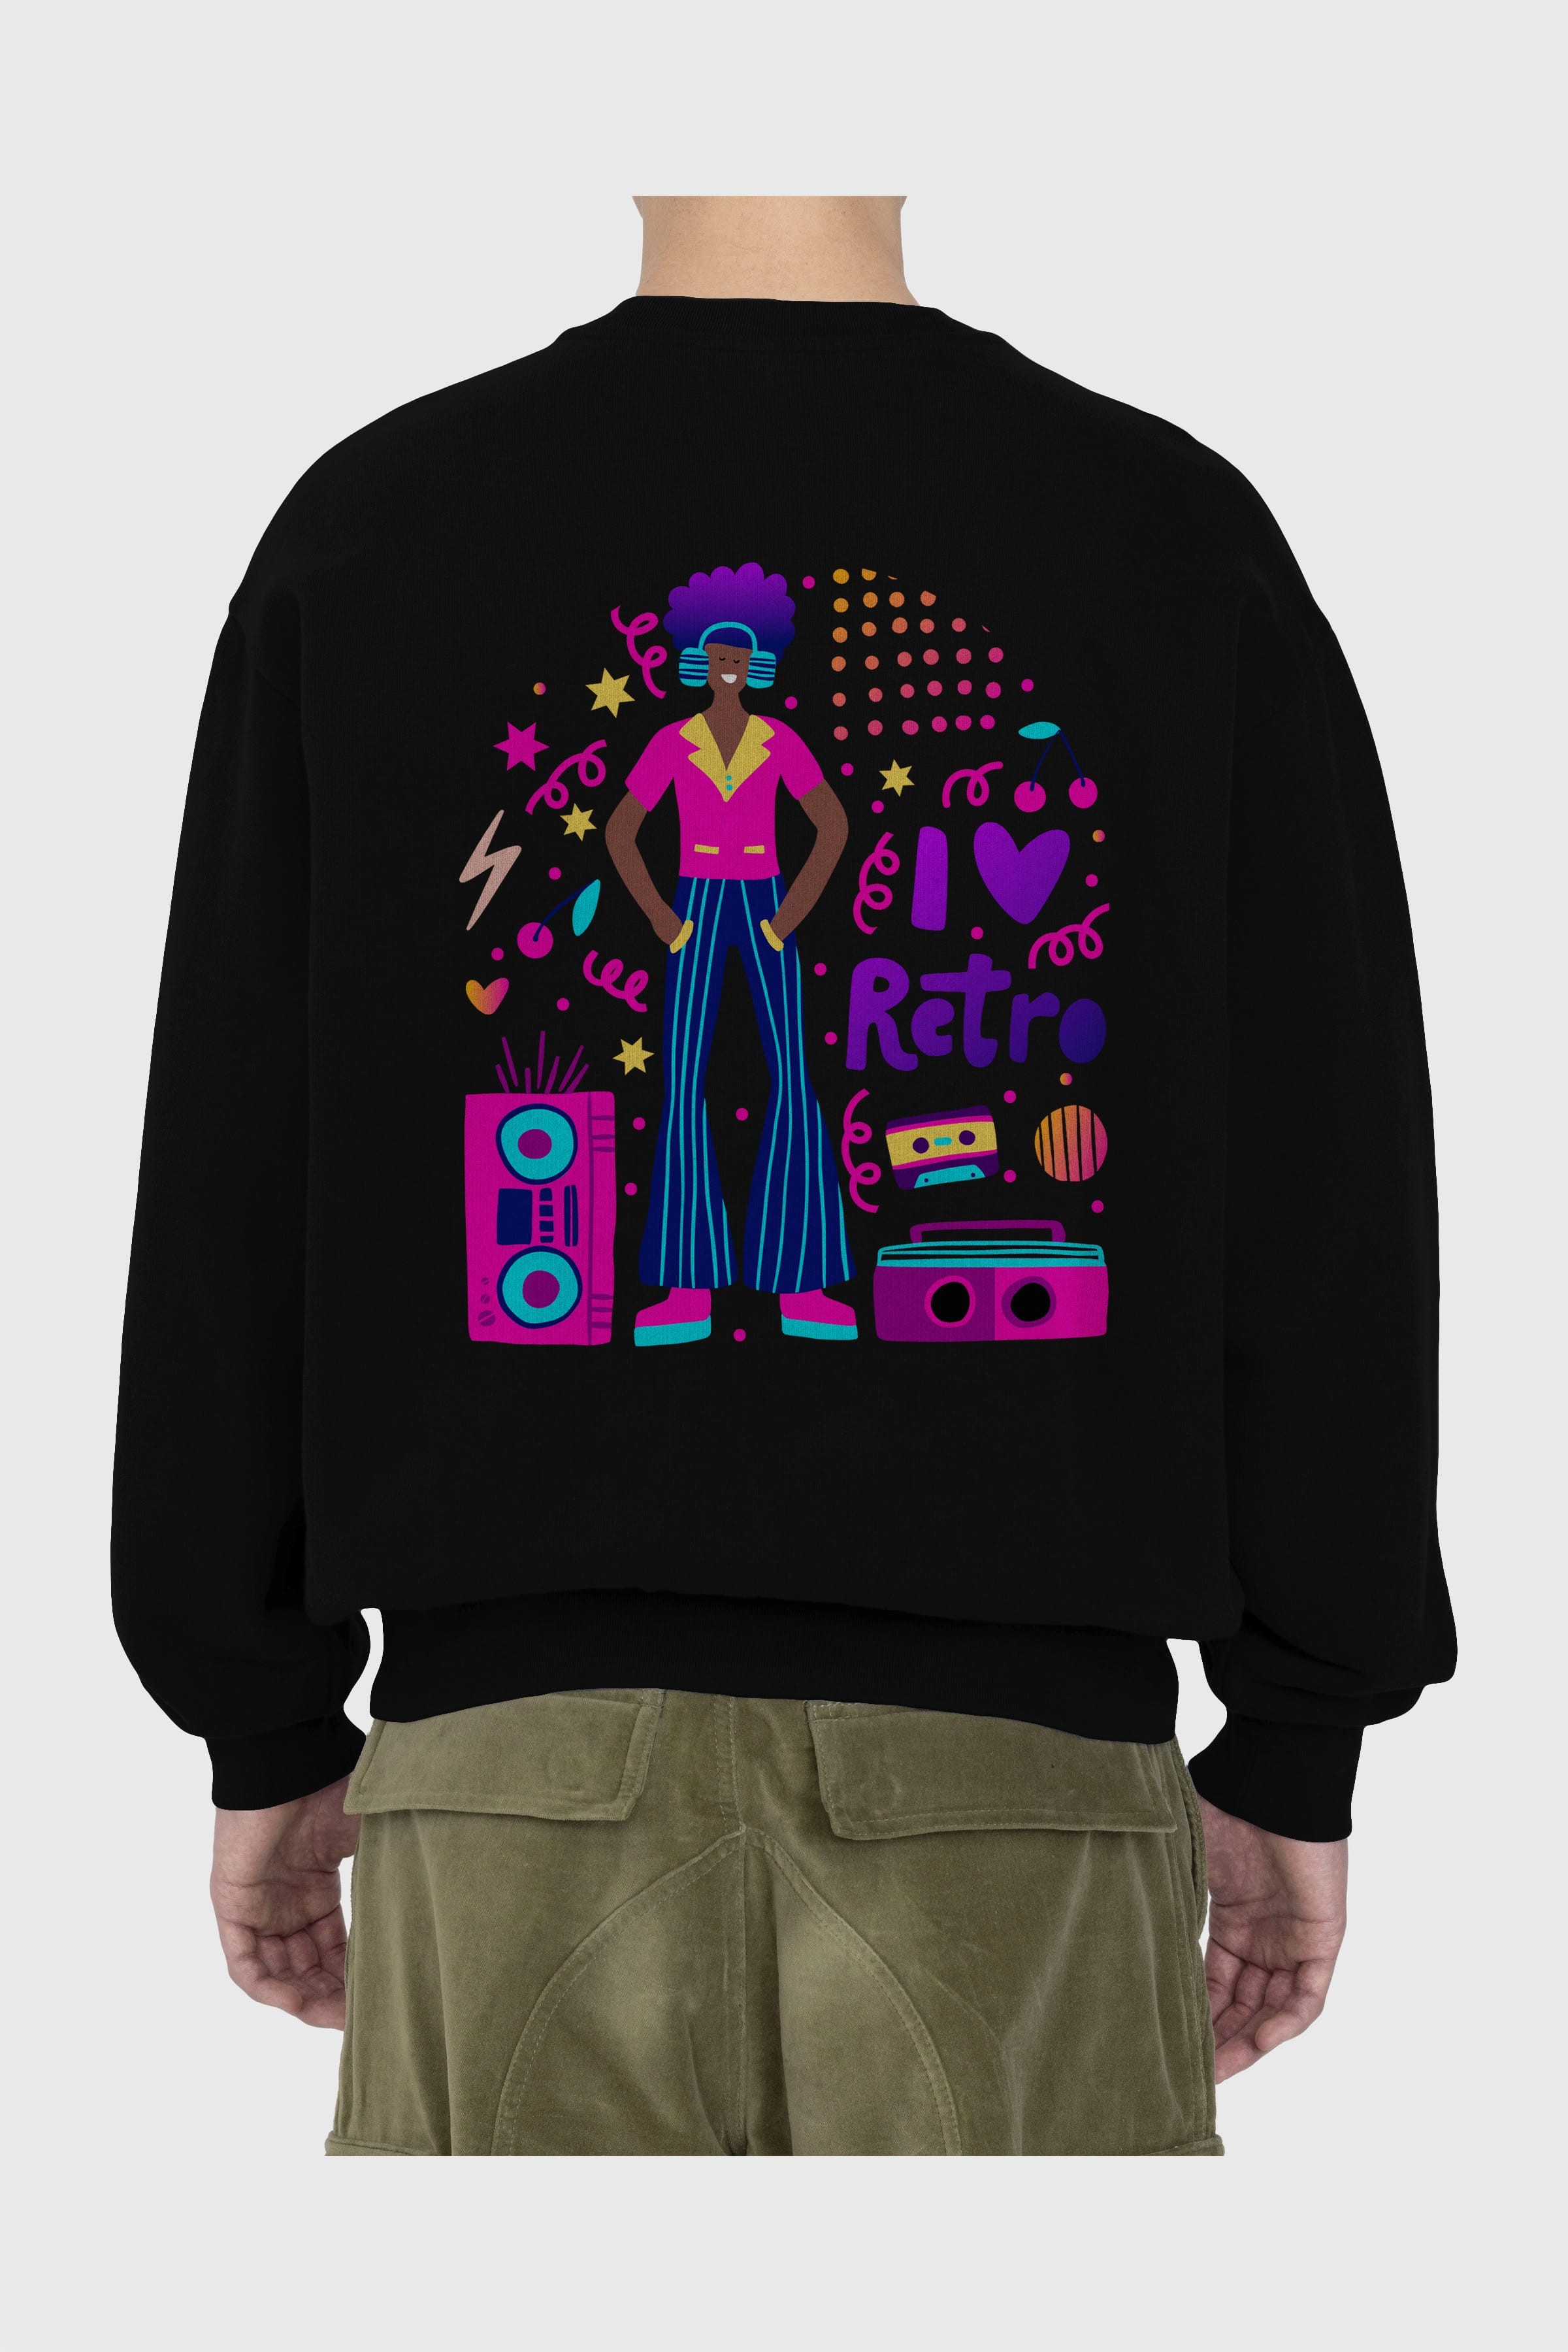 Retro Boy Party Arka Baskılı Oversize Sweatshirt Erkek Kadın Unisex